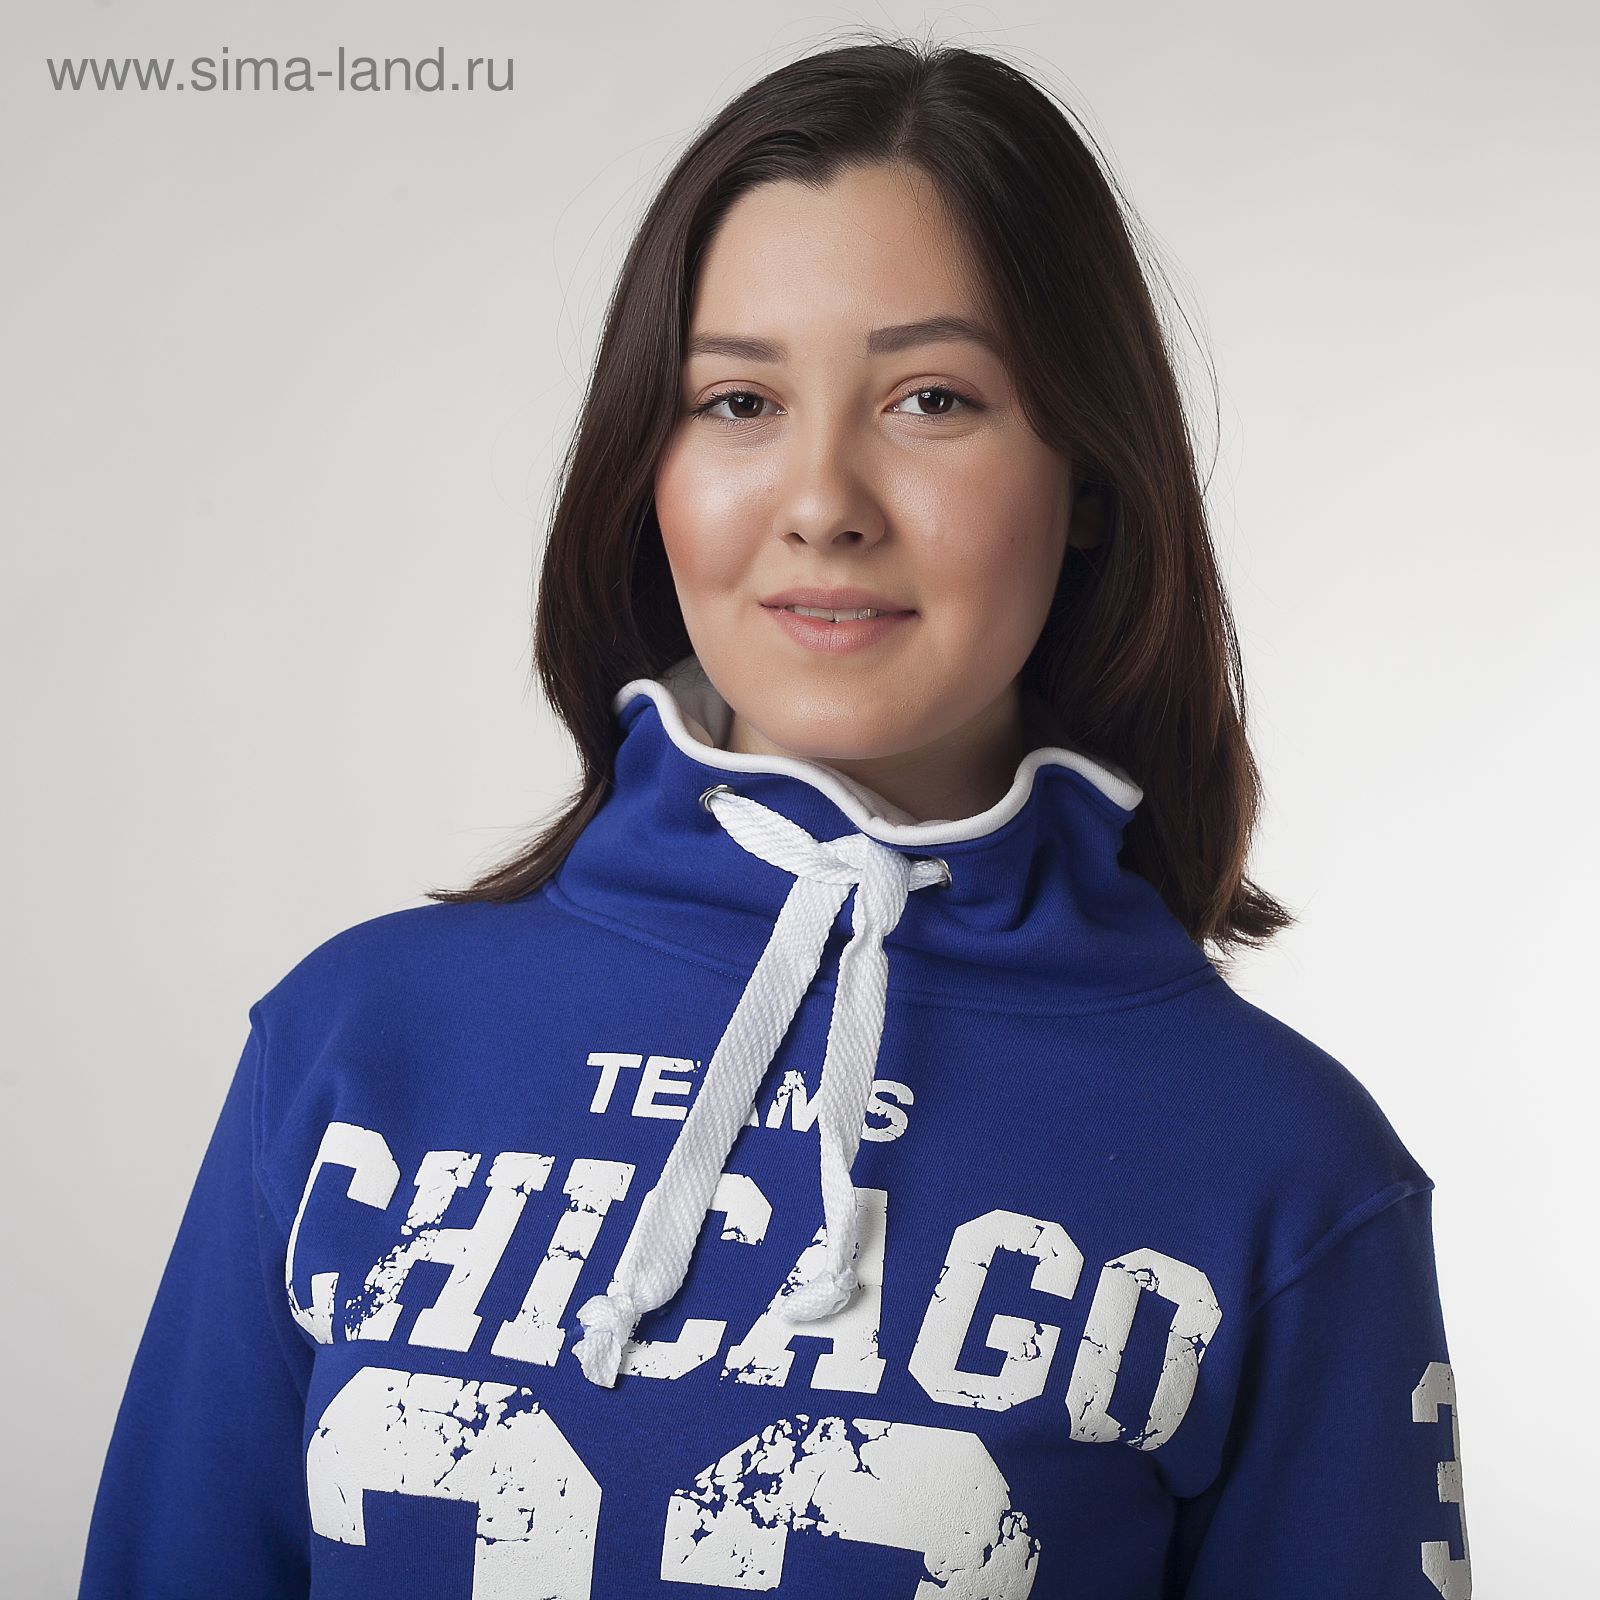 Толстовка женская "Чикаго 32", цвет синий, размер 44 (S) (арт. ТЖБК-СТ0001)